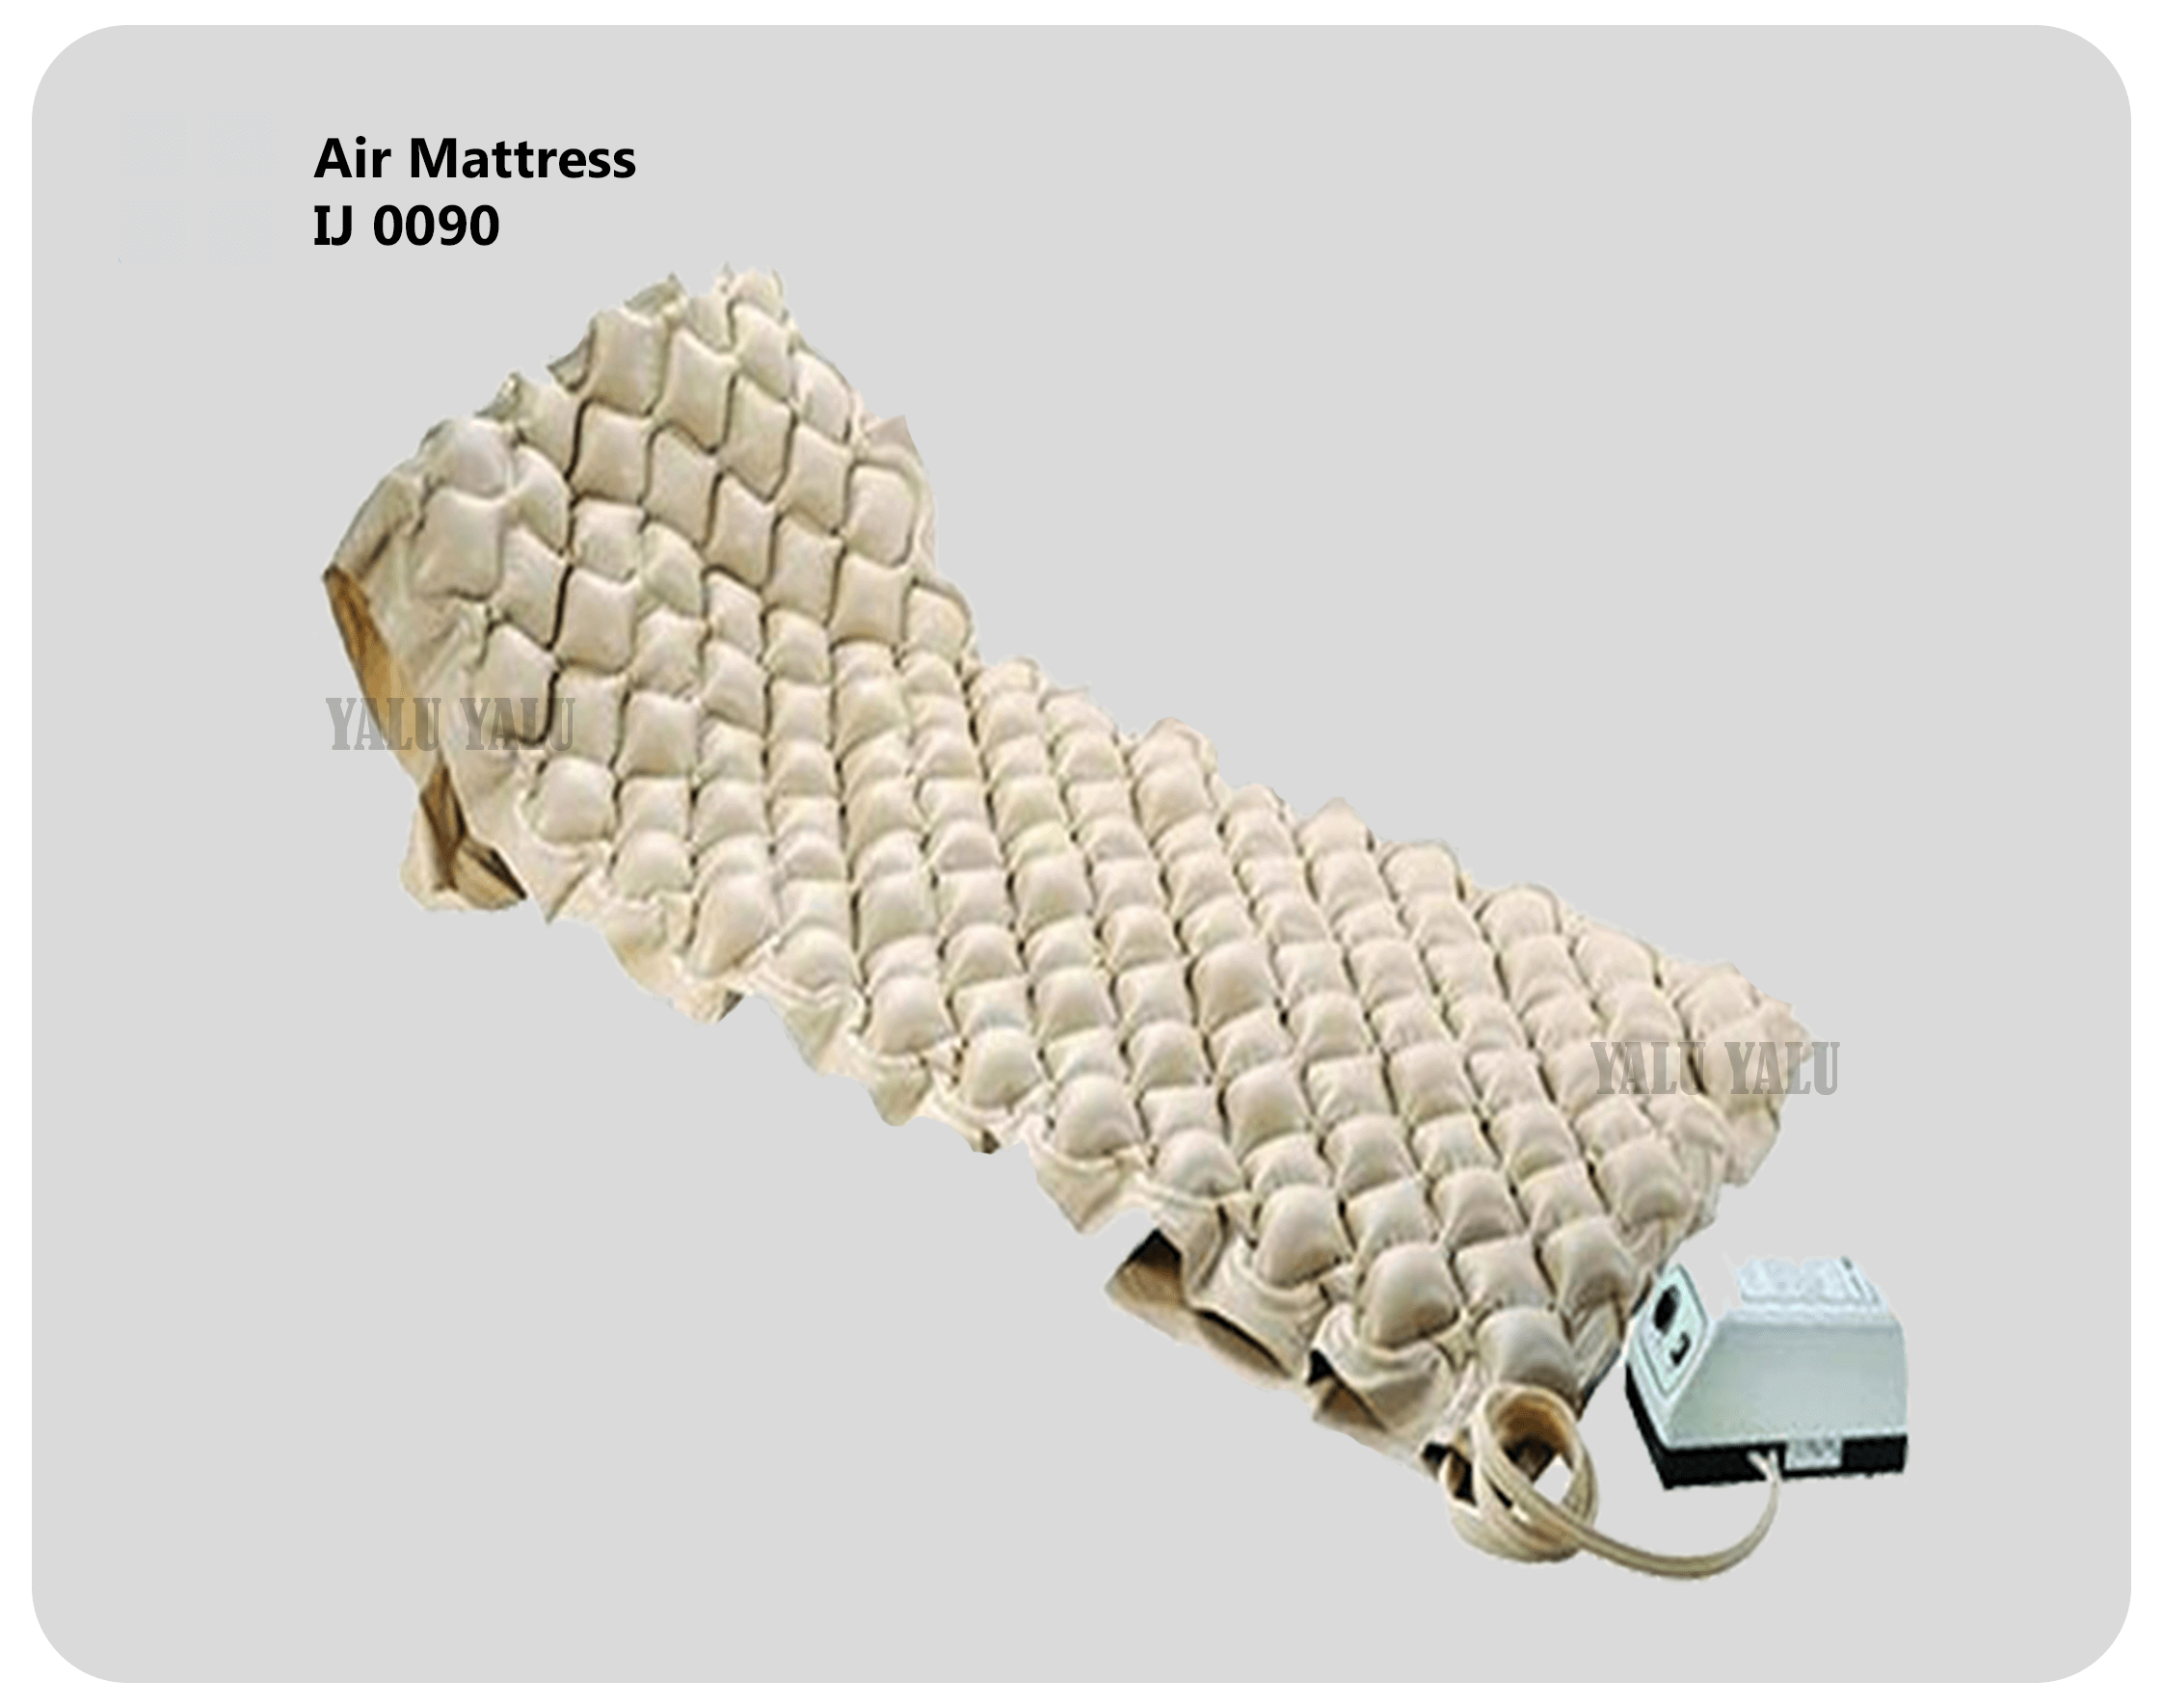 air mattress 1co2 inflator